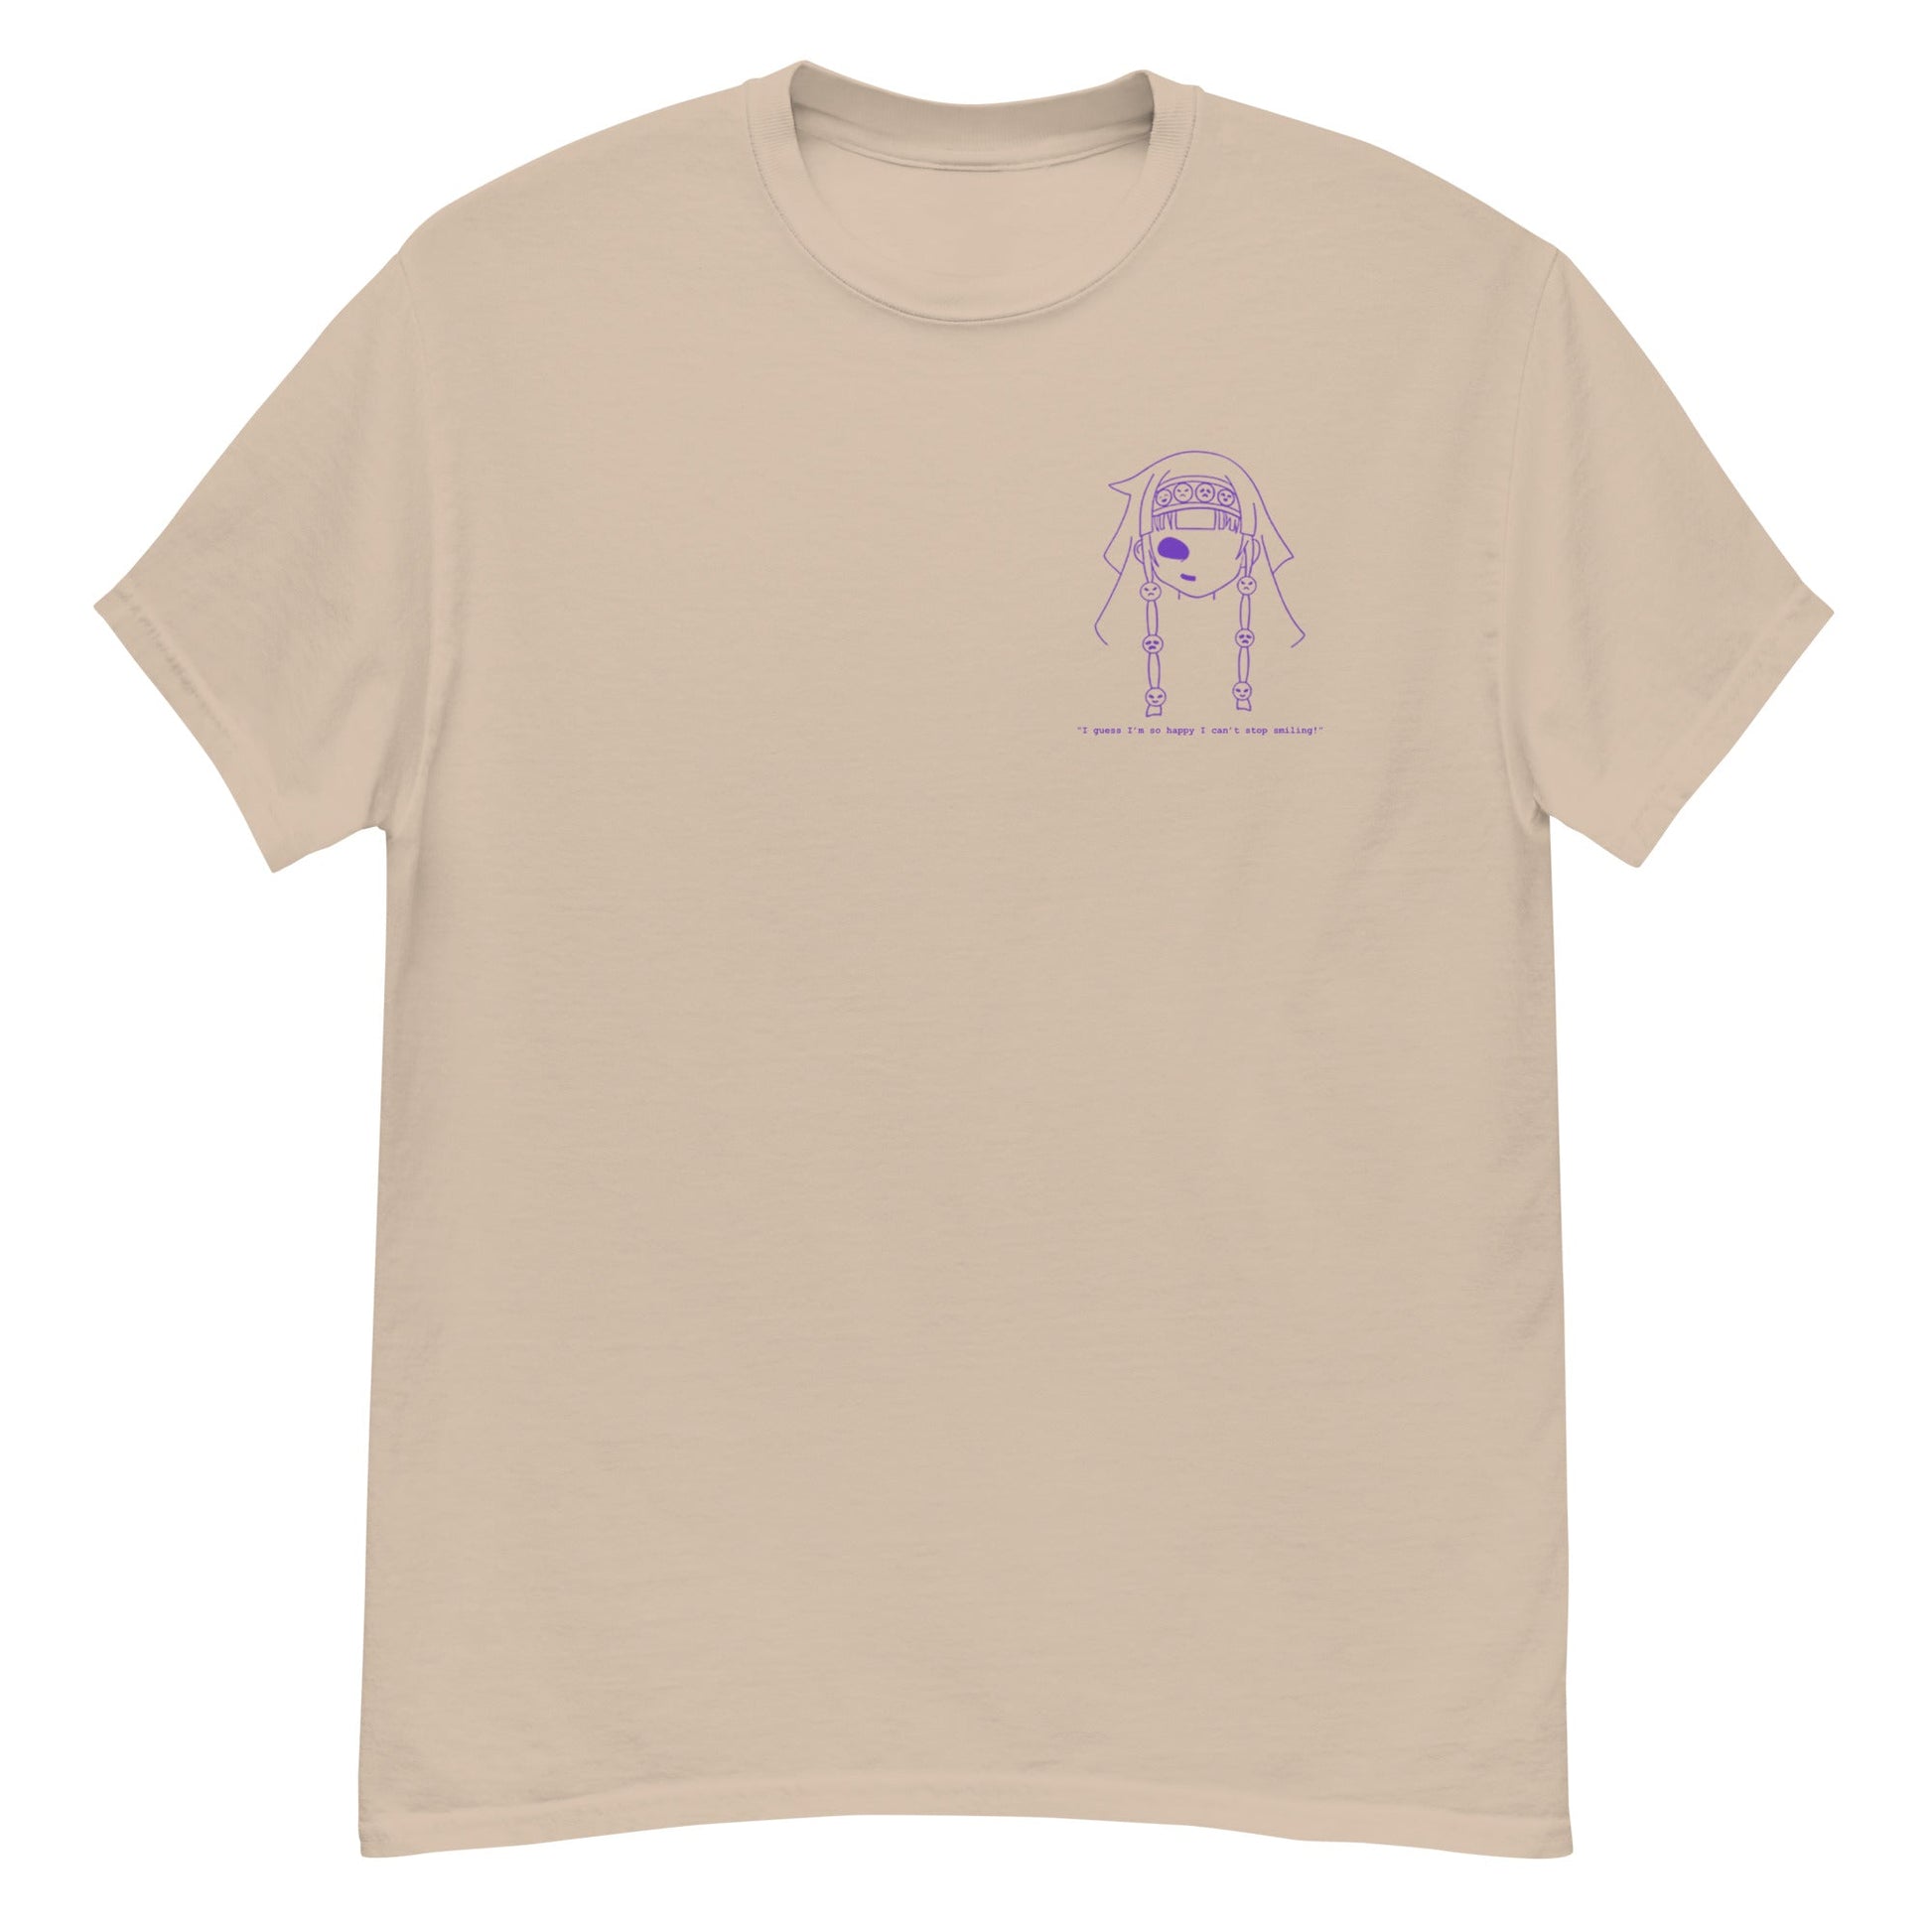 Wish-Granting - T-Shirt - Project NuMa - T-Shirt